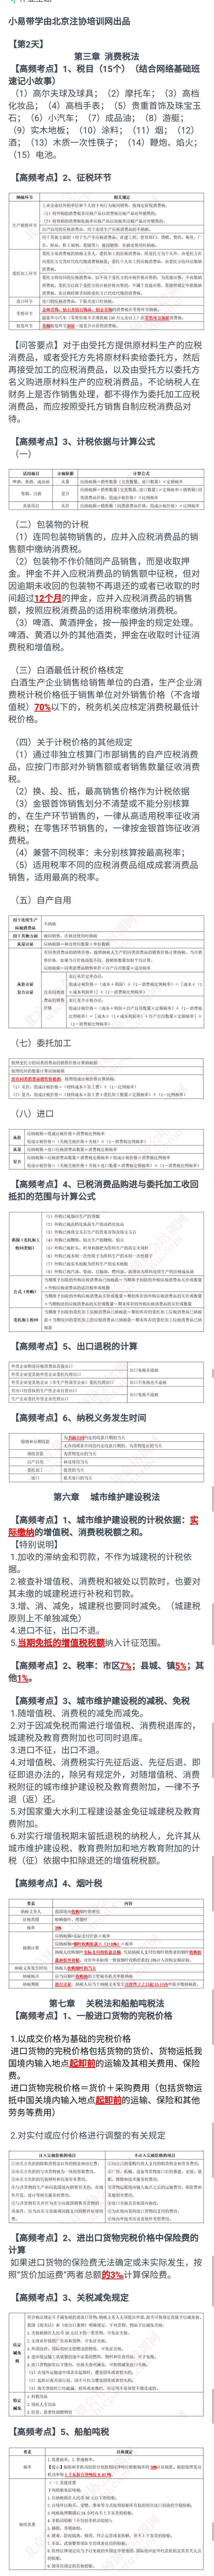 注册会计师考试税法.jpg